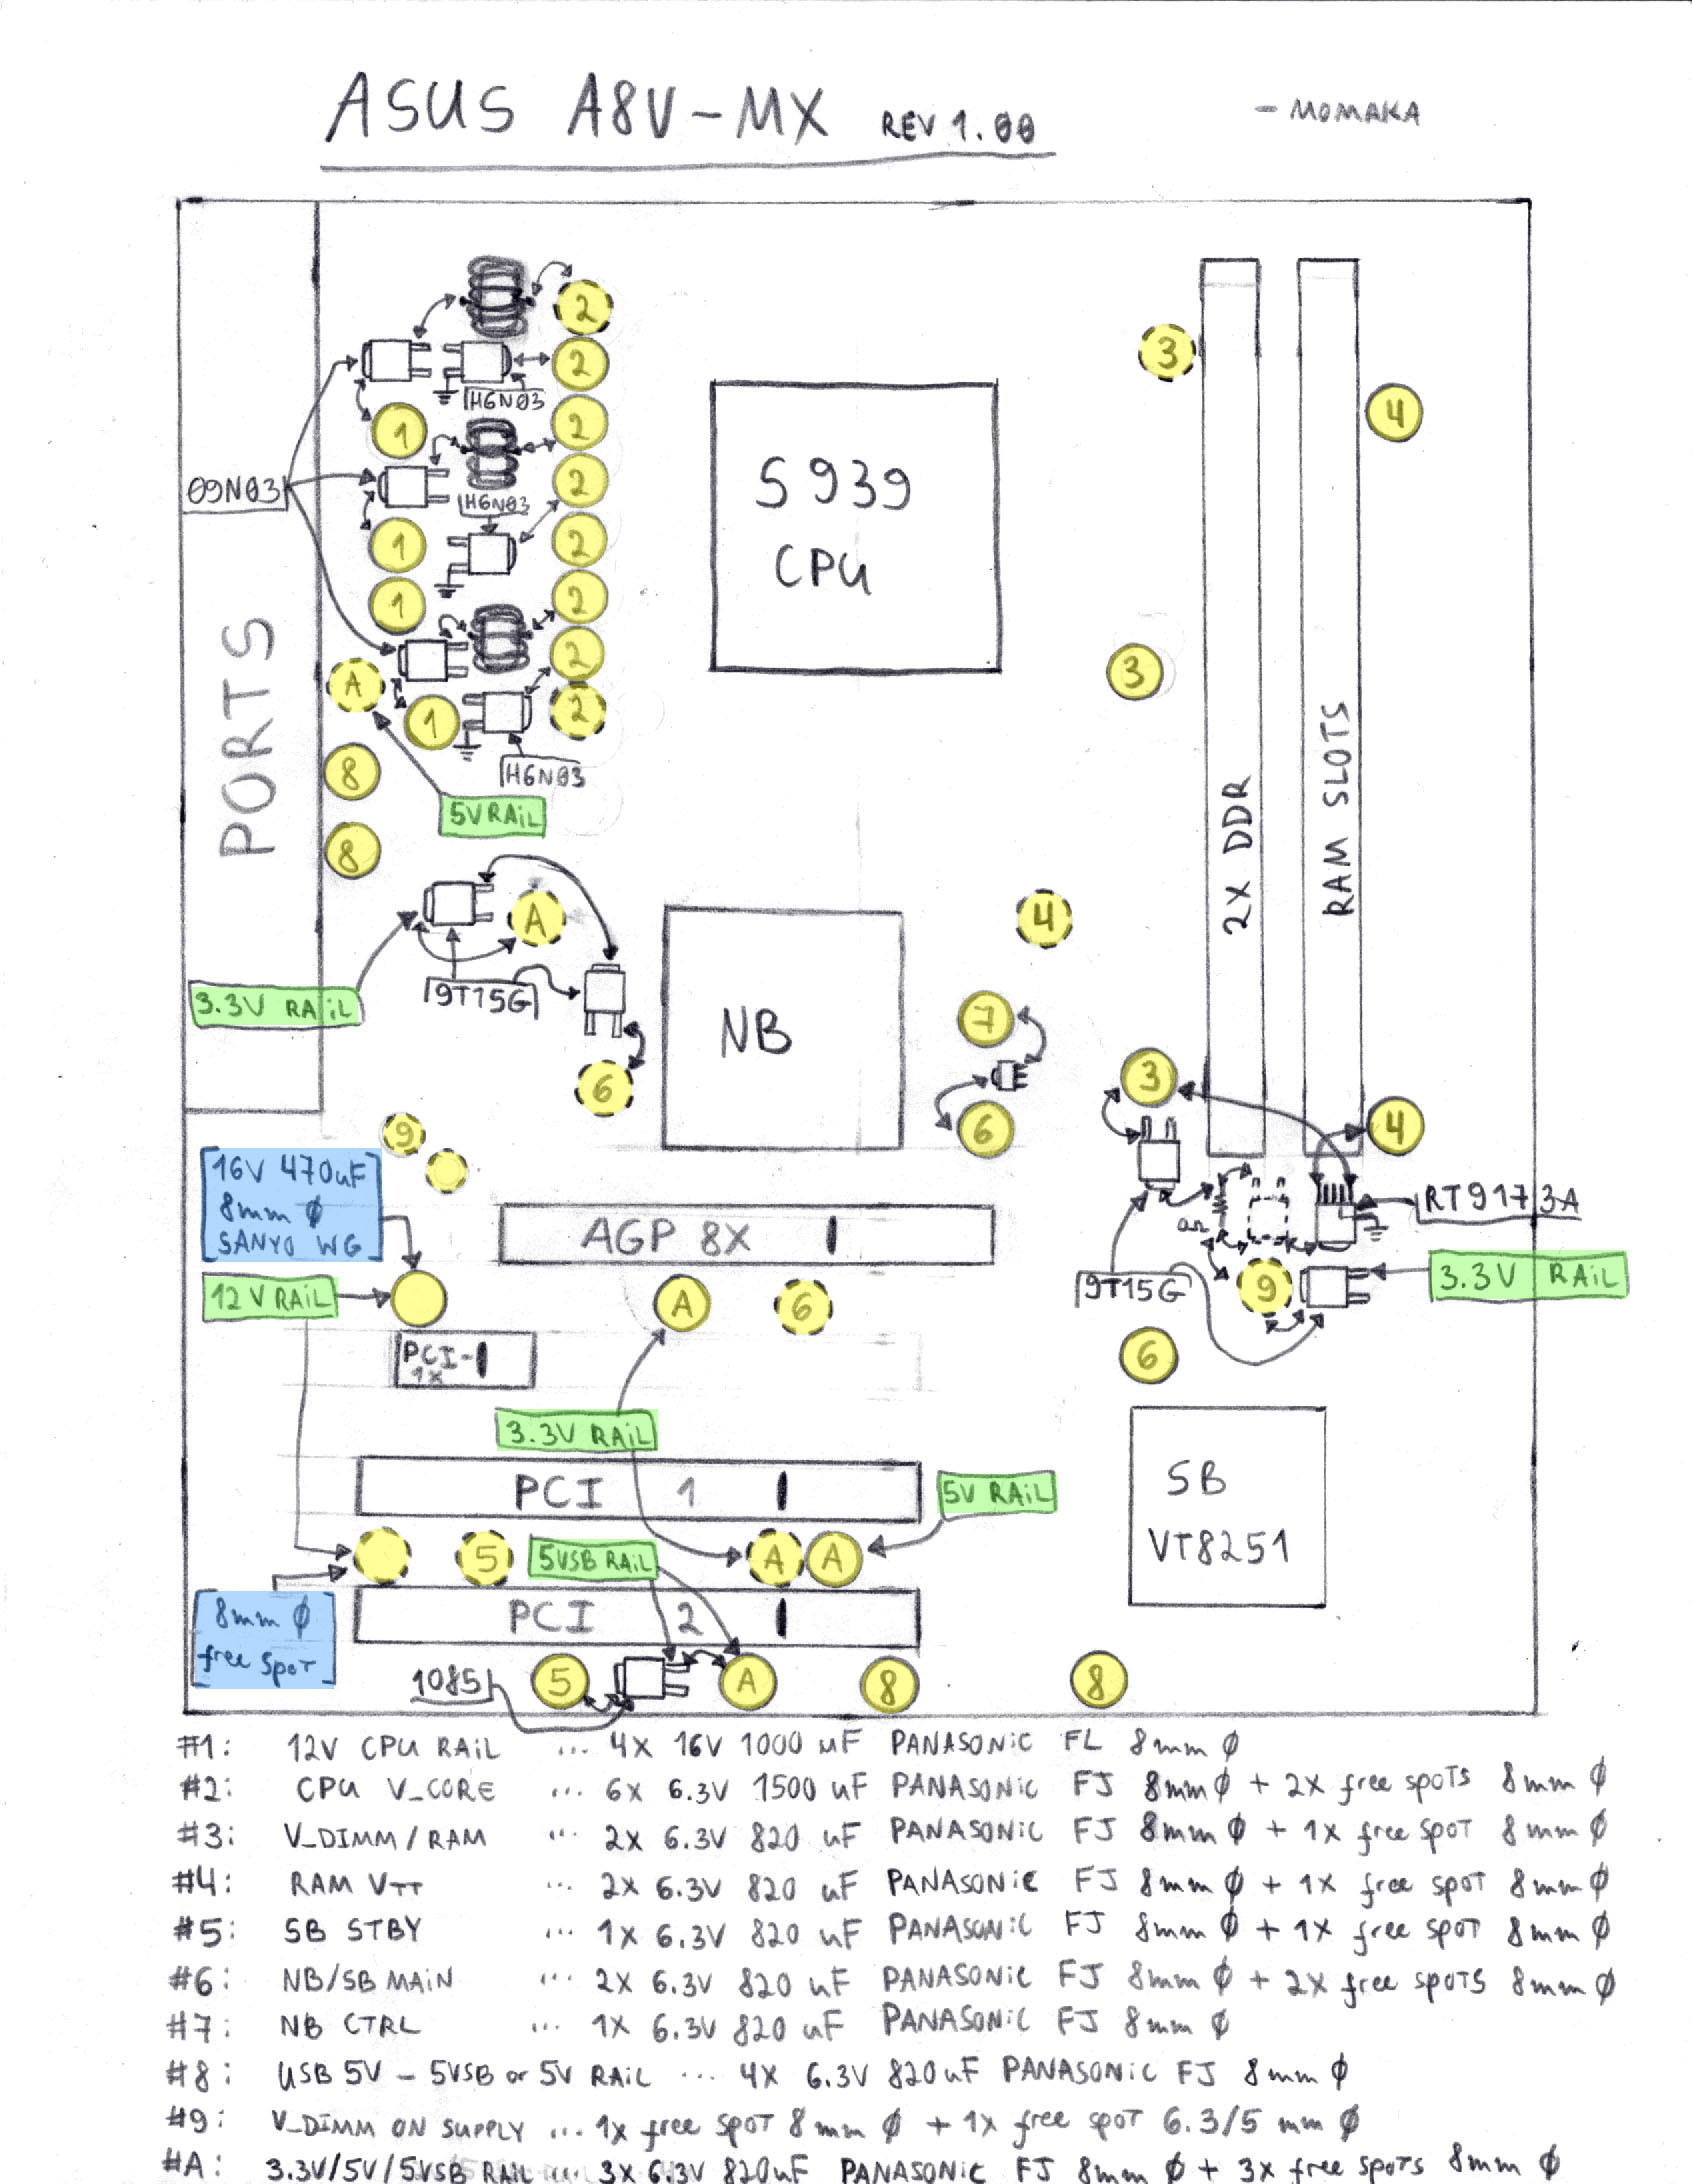 ASUS A8V-MX cap diagram and some experiments - Badcaps